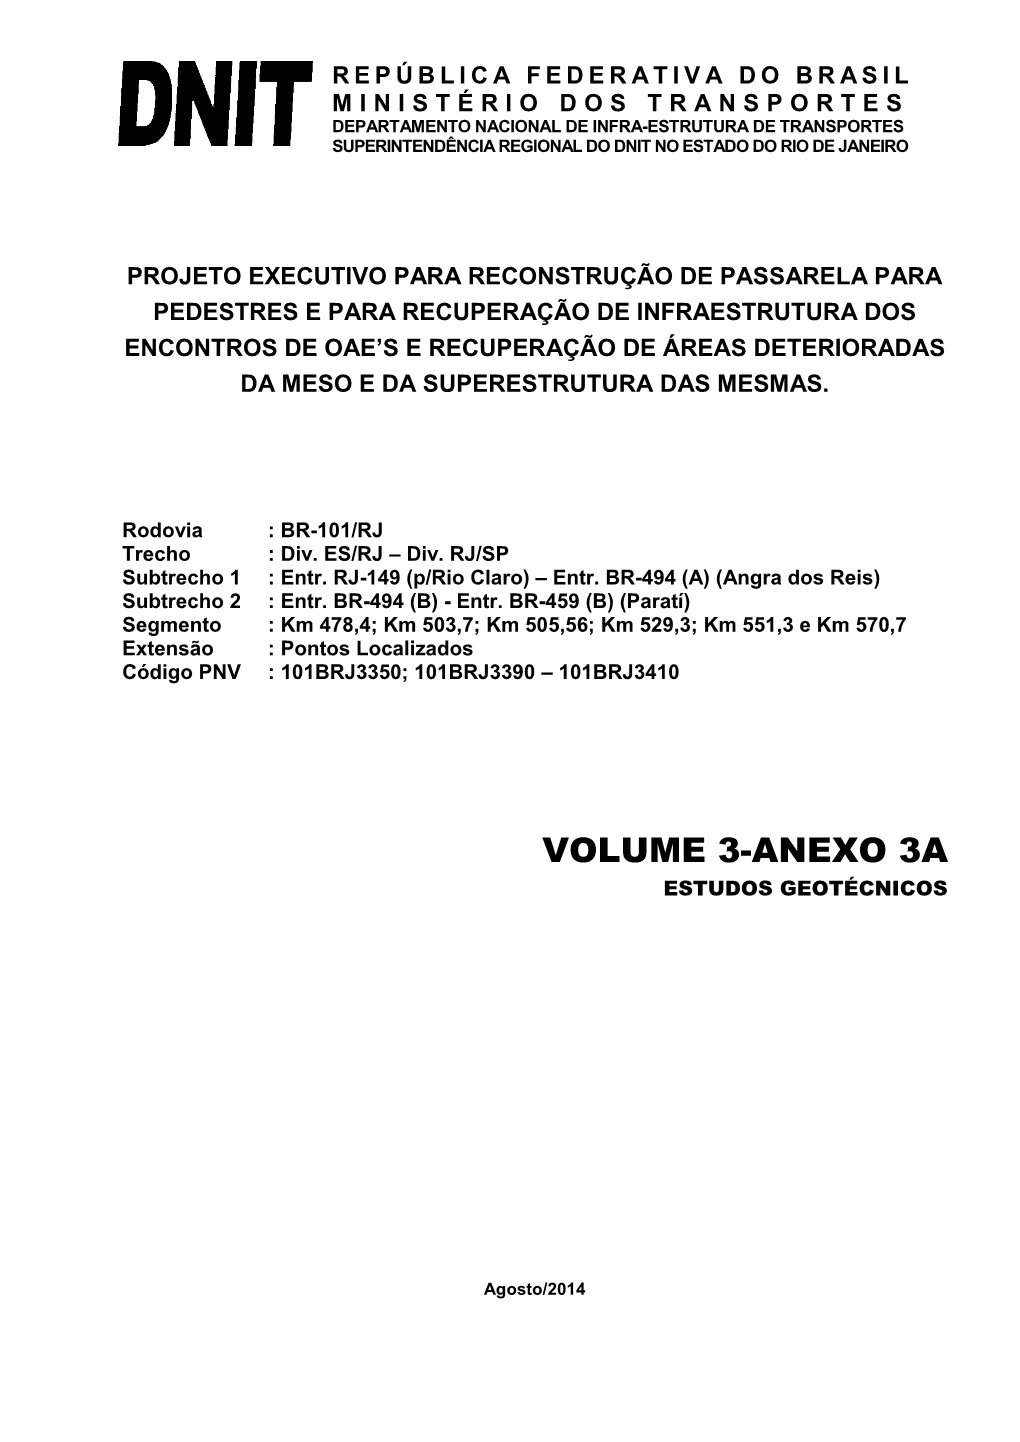 Volume 3-Anexo 3A Estudos Geotécnicos